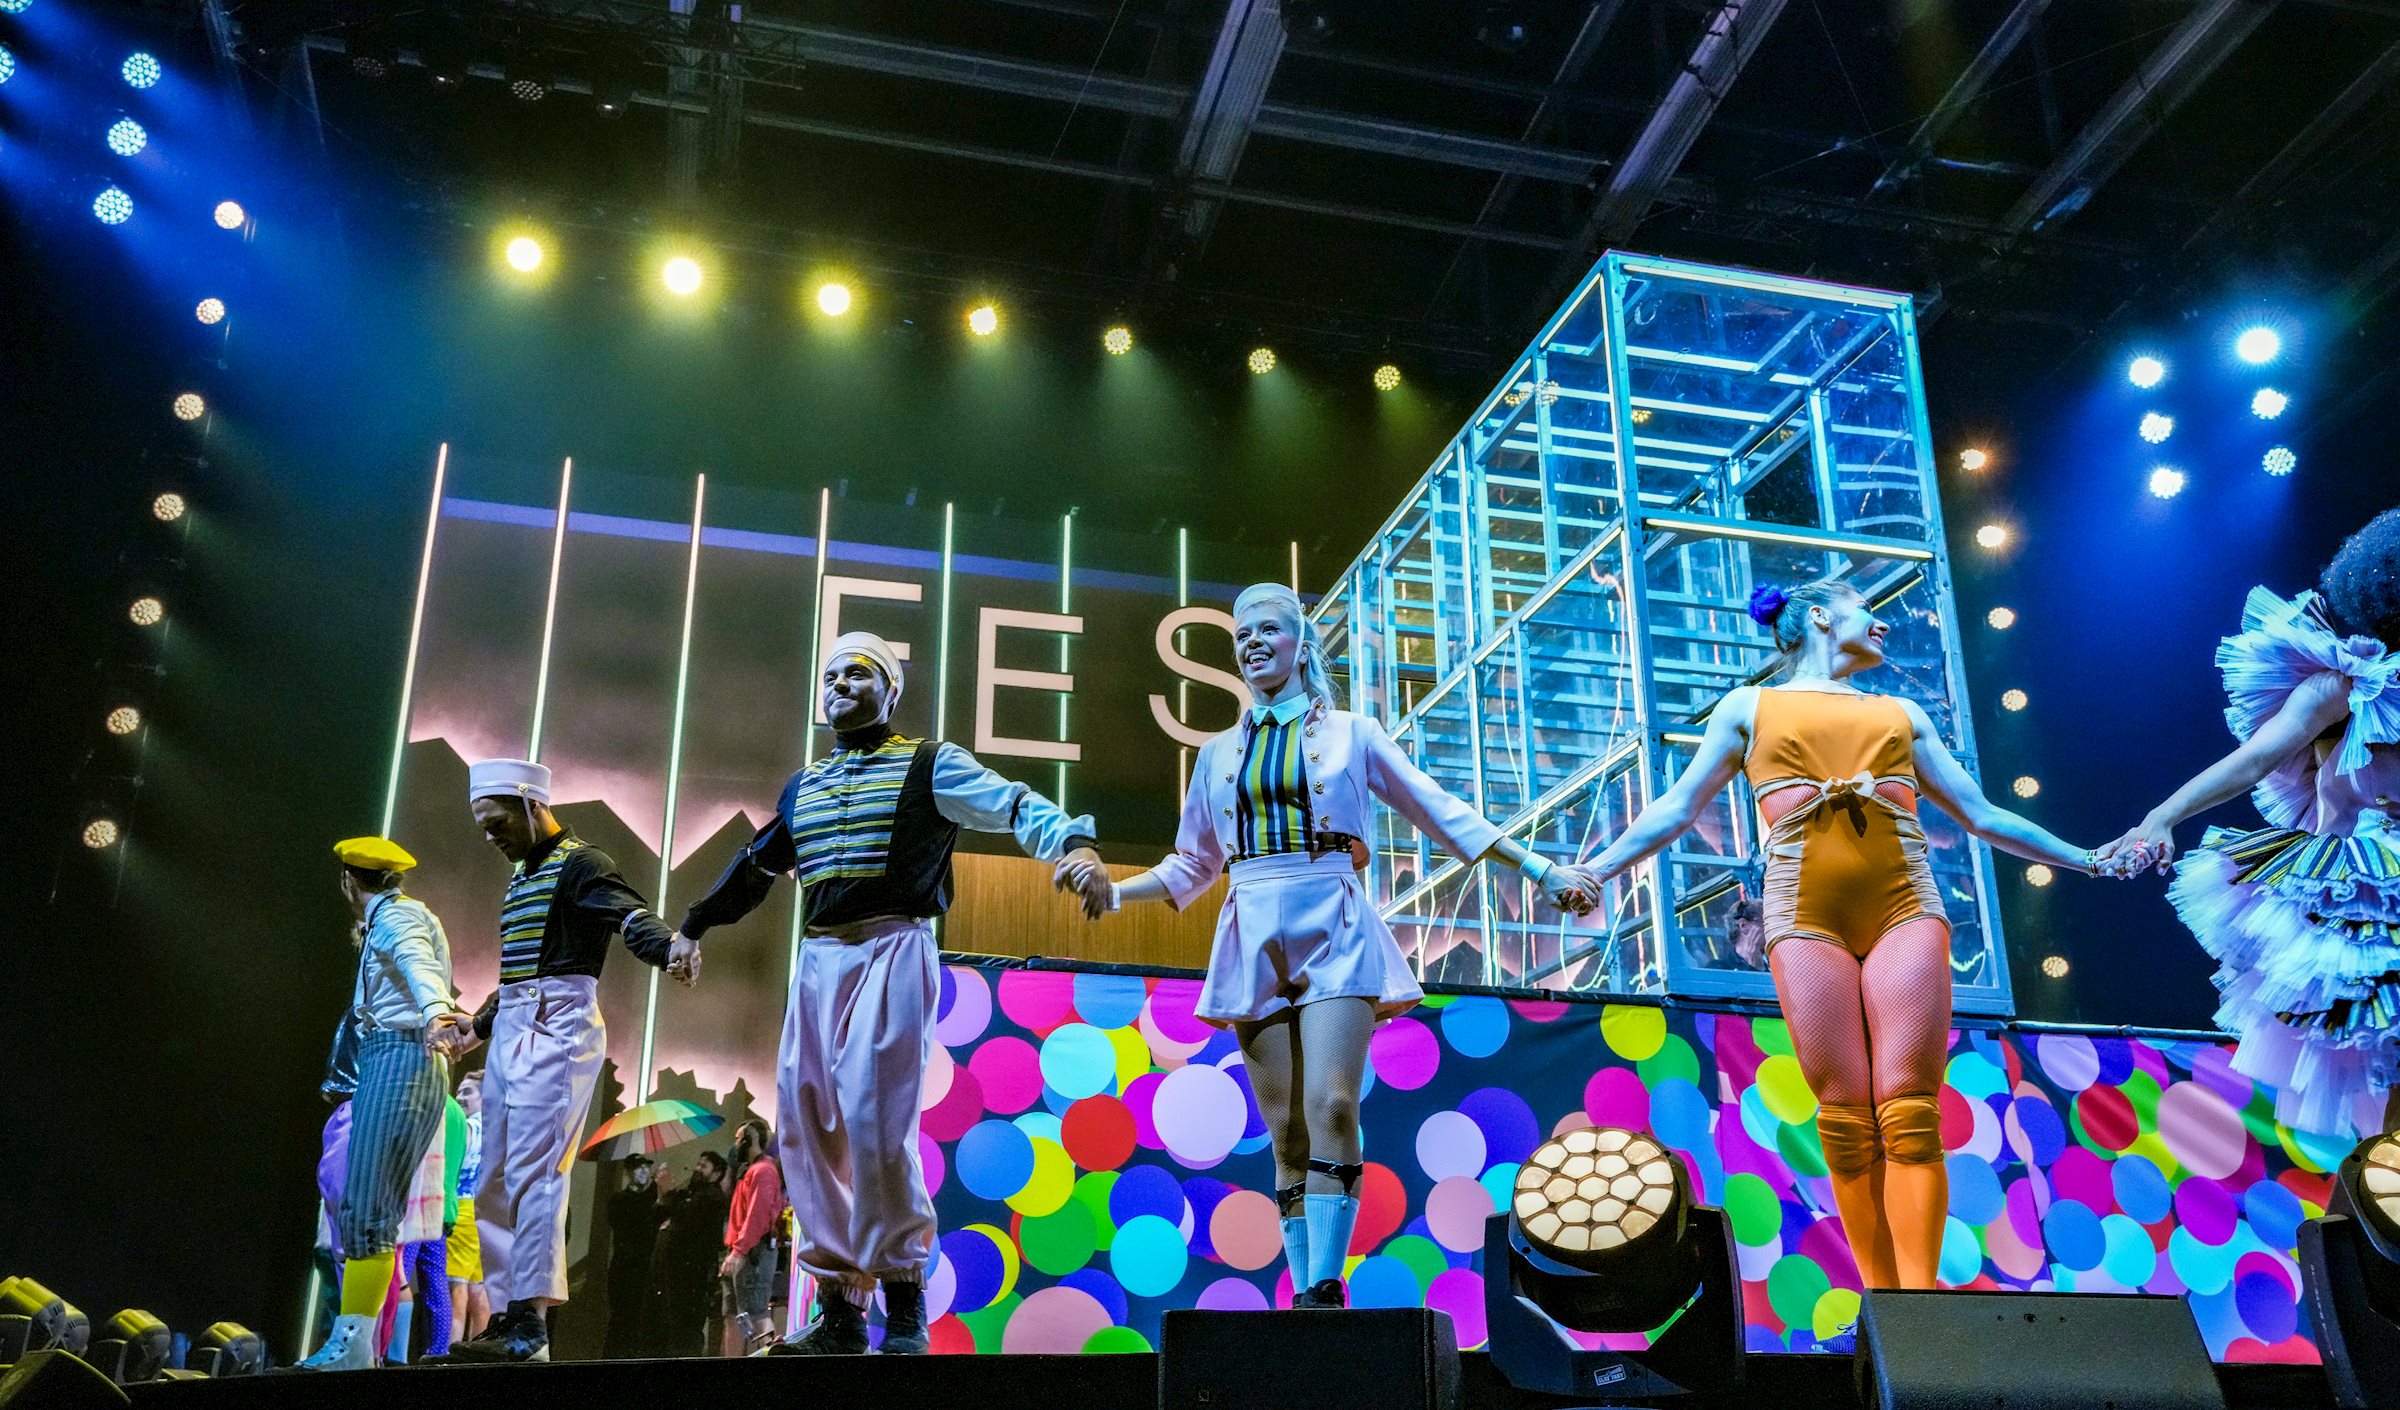 PRG is verheugd om met Cirque du Soleil en hun nieuwe show samen te werken op het gebied van Rigging, Audio en Lichttechnologie.